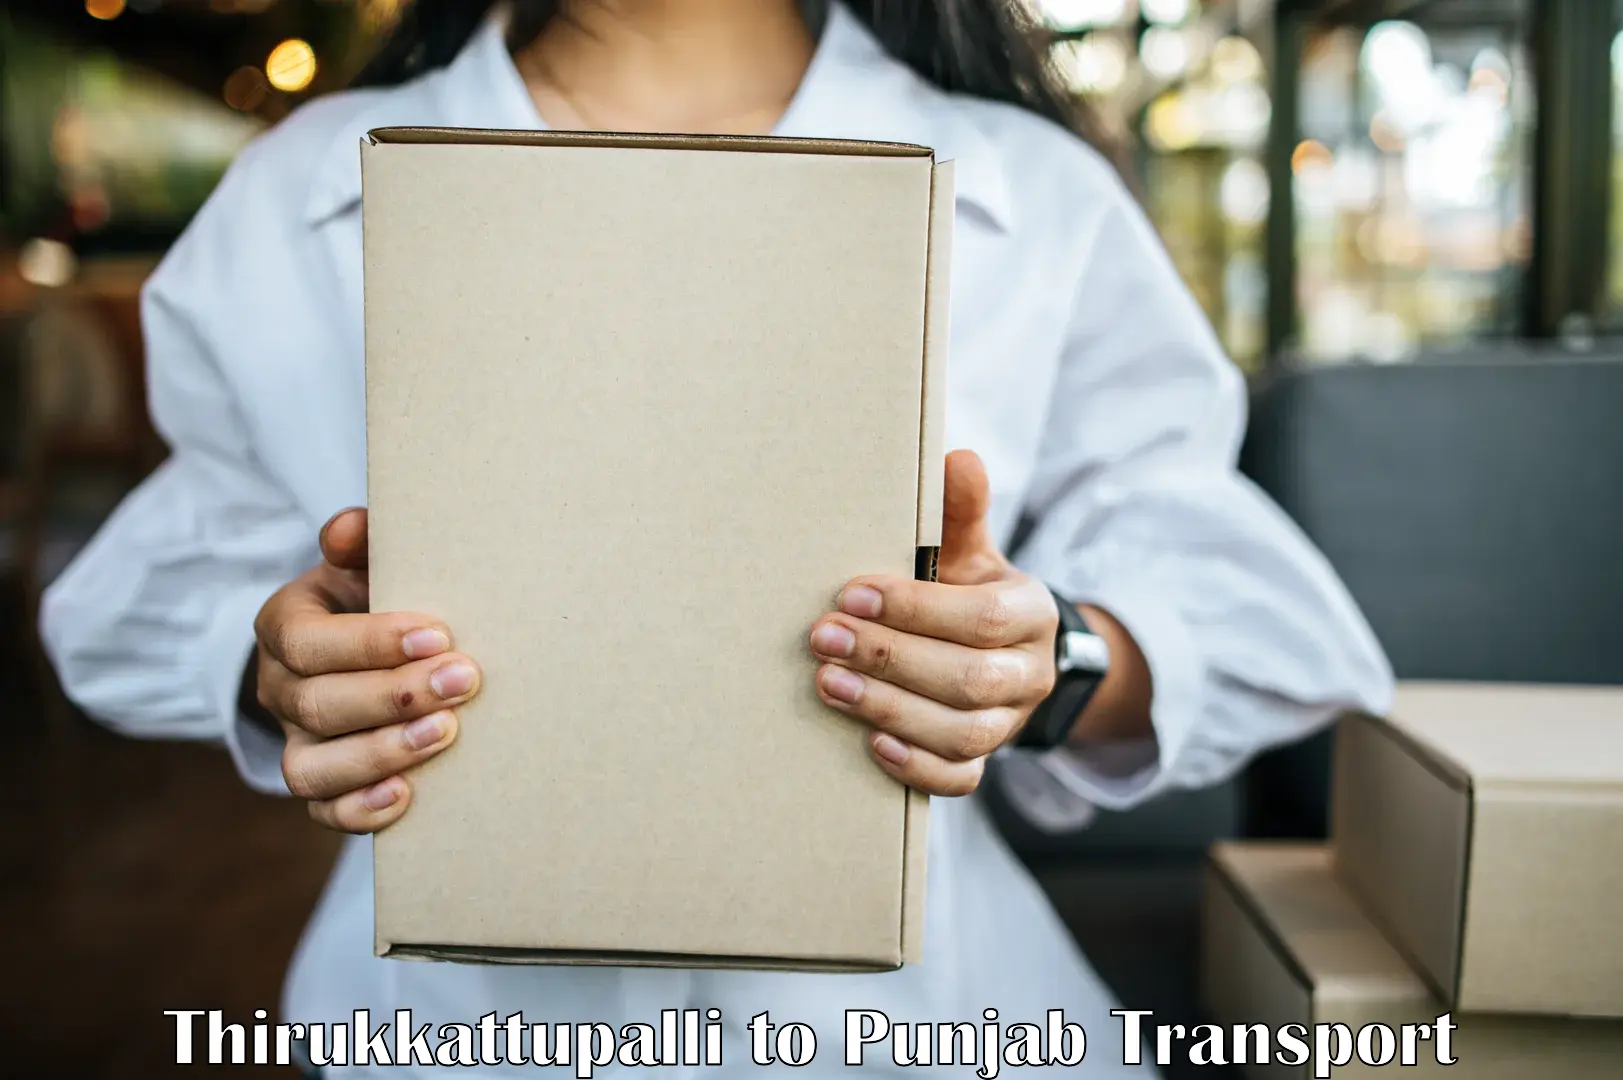 Material transport services Thirukkattupalli to Mandi Gobindgarh